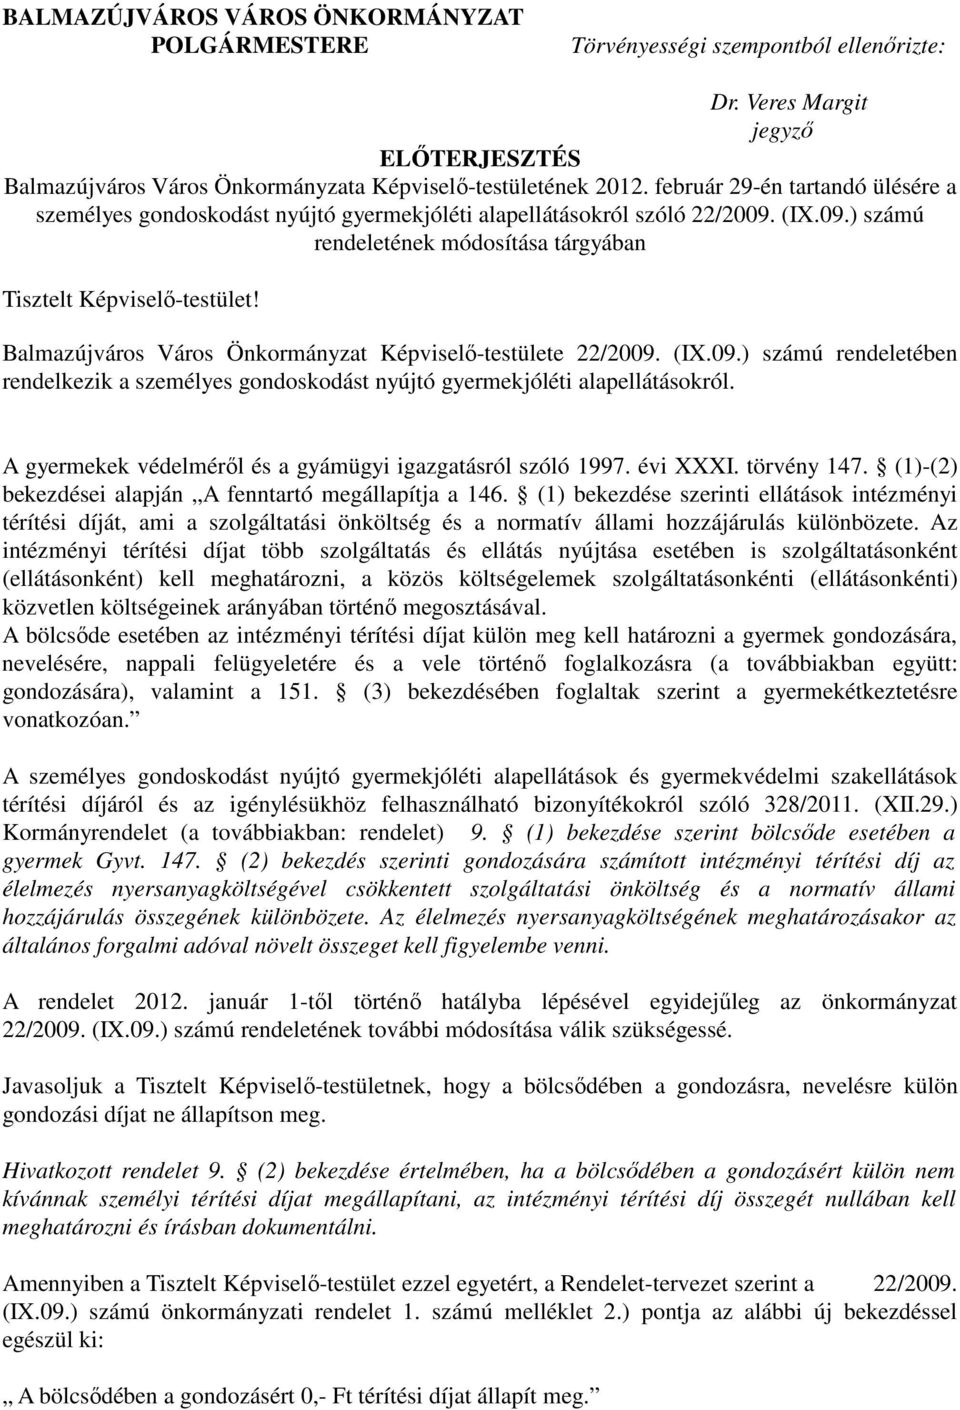 Balmazújváros Város Önkormányzat Képviselı-testülete 22/2009. (IX.09.) számú rendeletében rendelkezik a személyes gondoskodást nyújtó gyermekjóléti alapellátásokról.